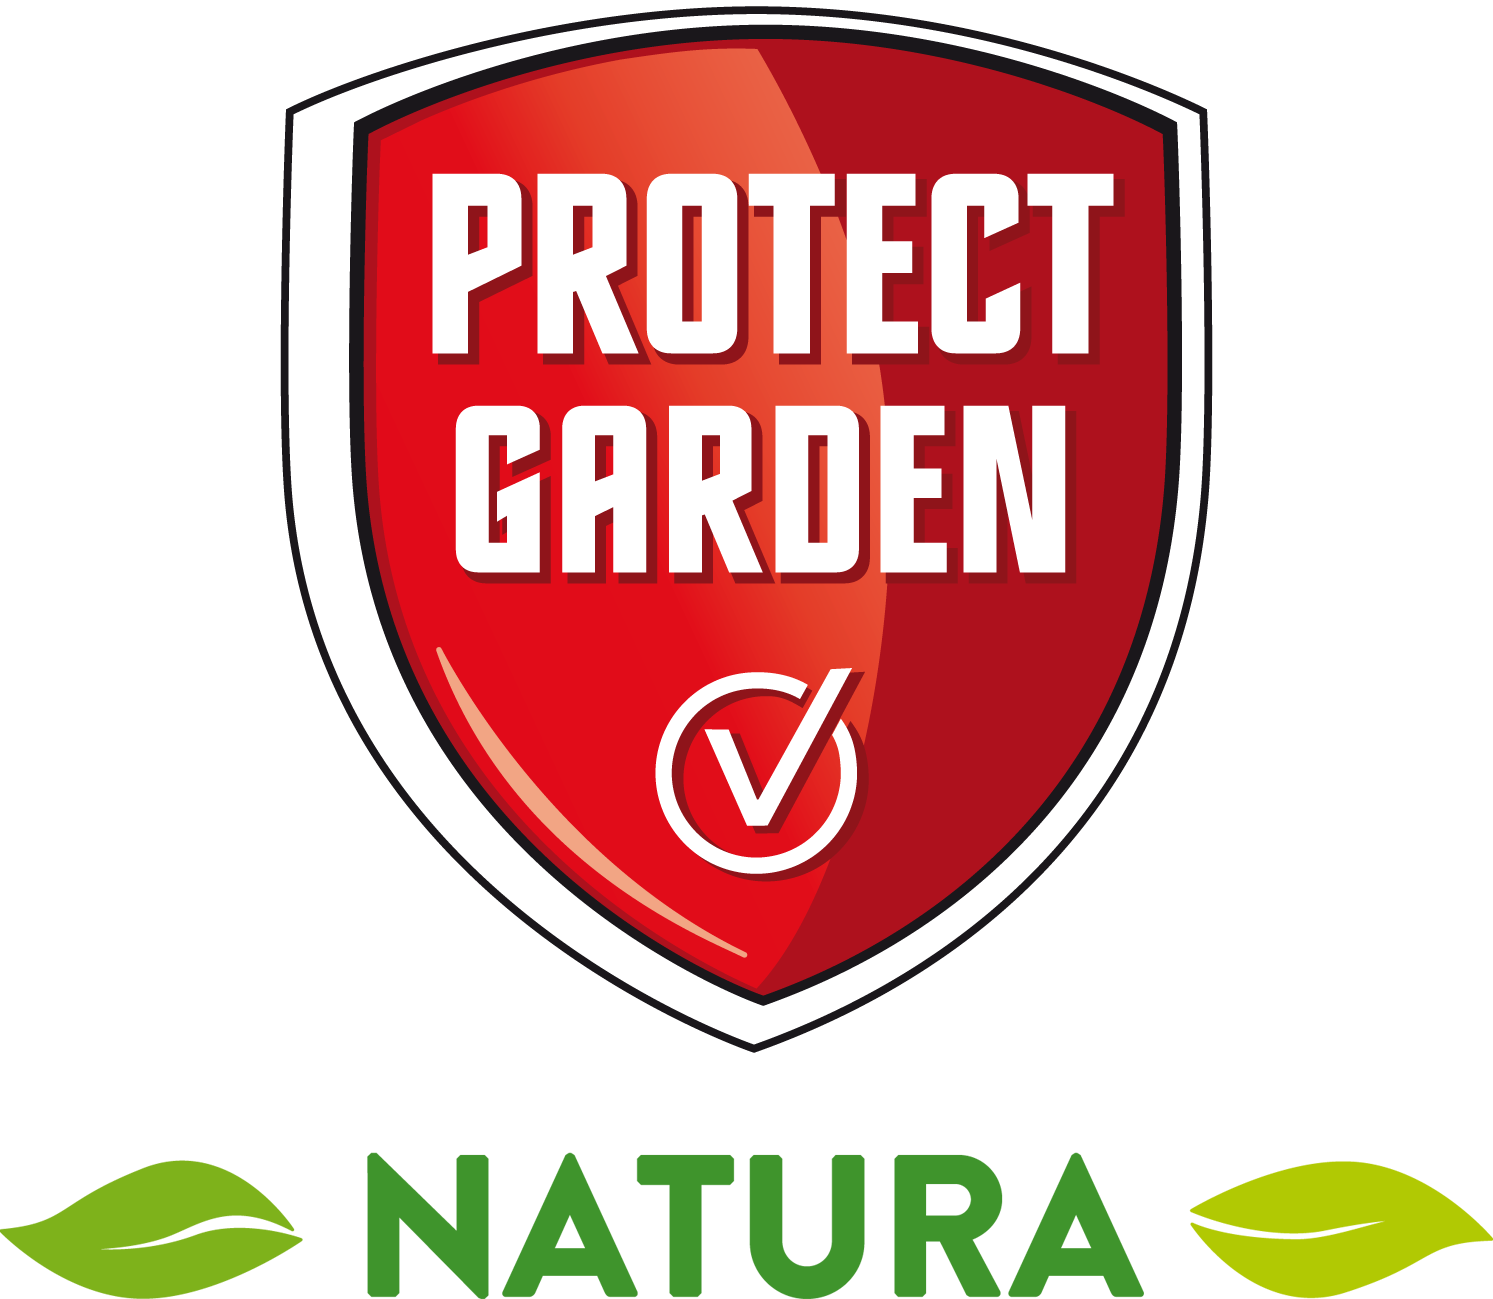 Protect Garden Natura